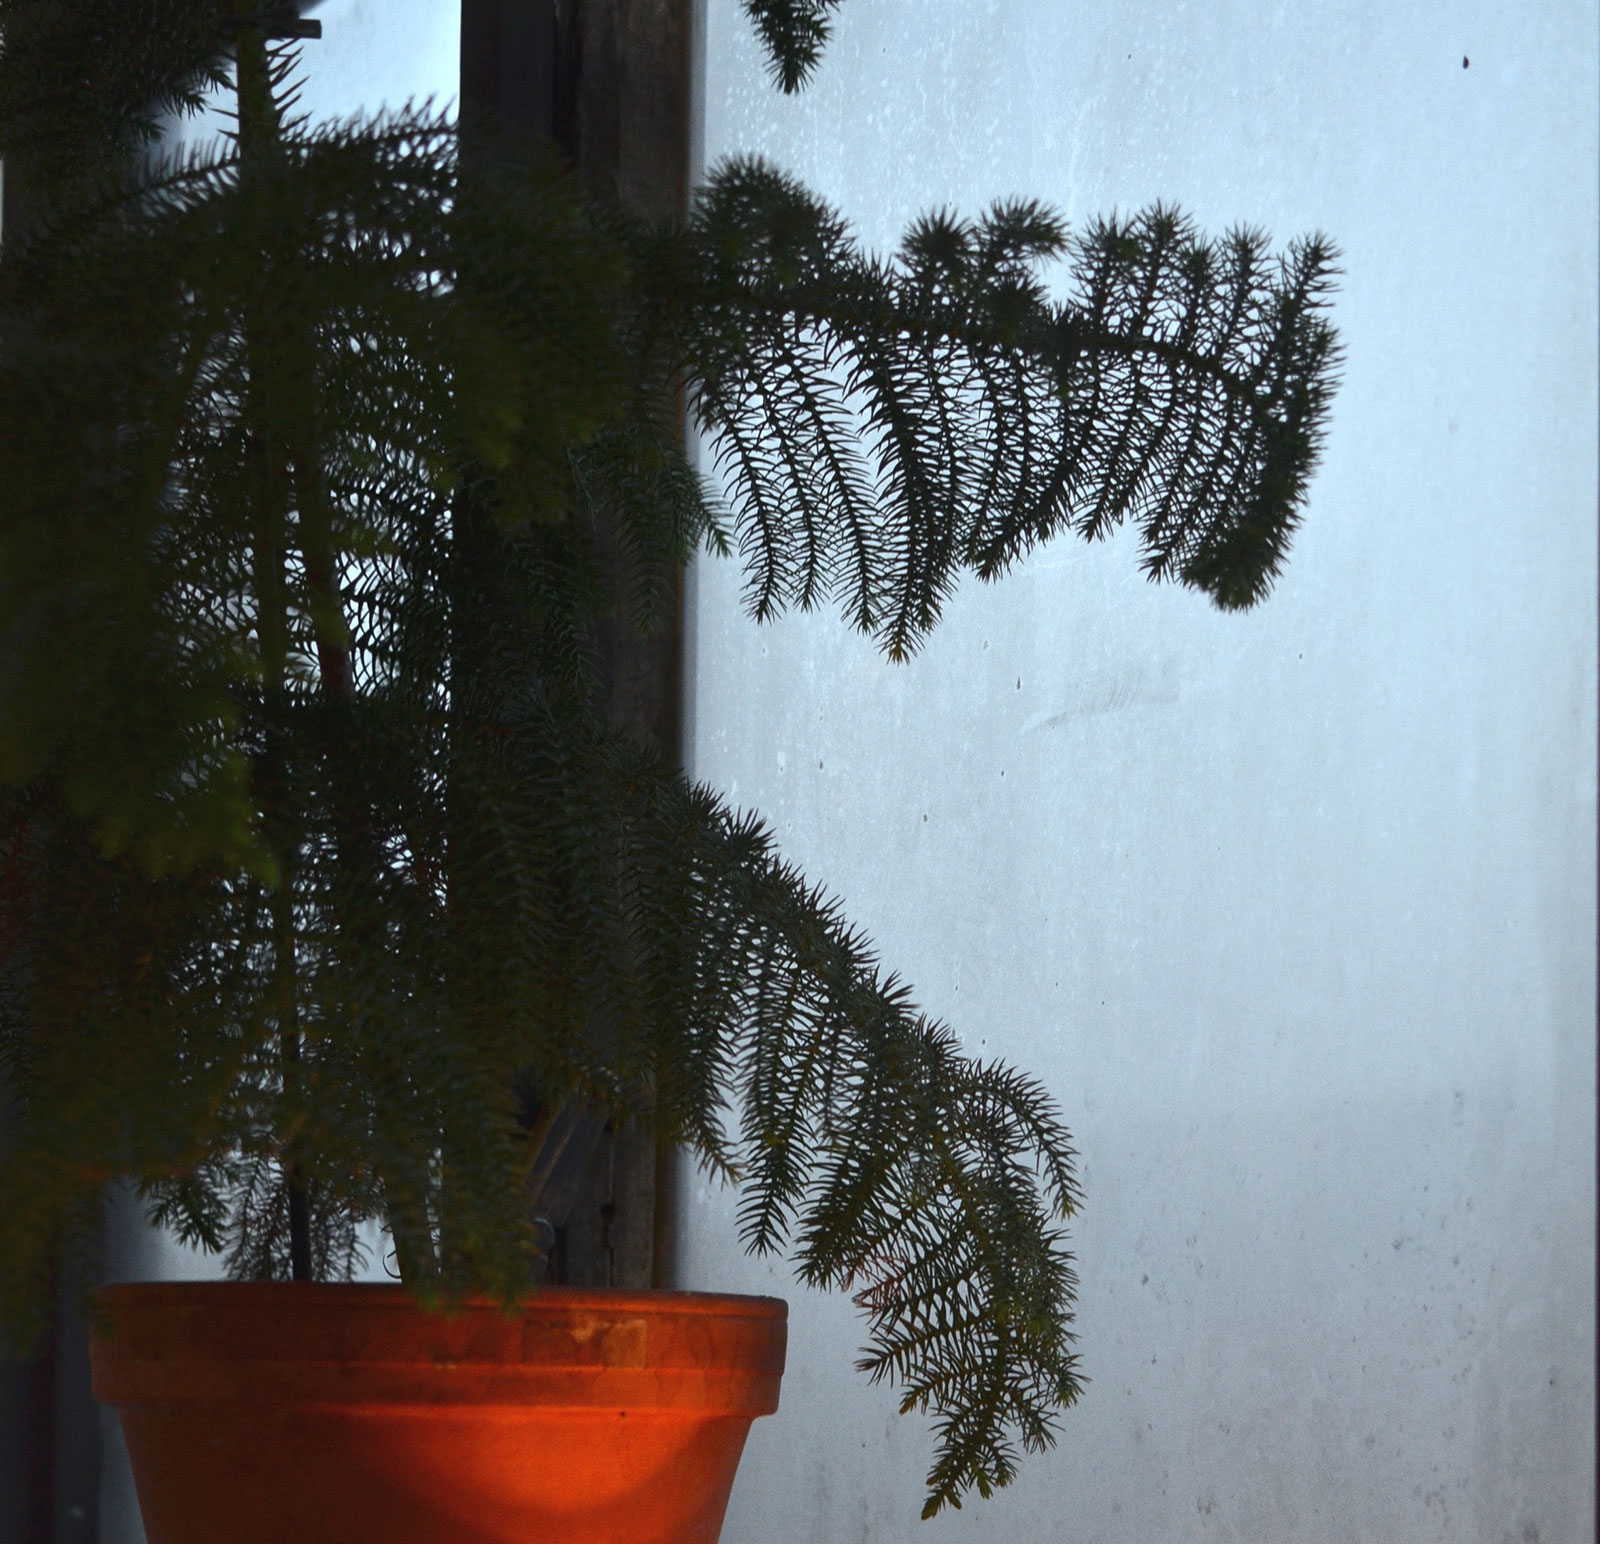 Drzewo araukaria w doniczce na parapecie okna.